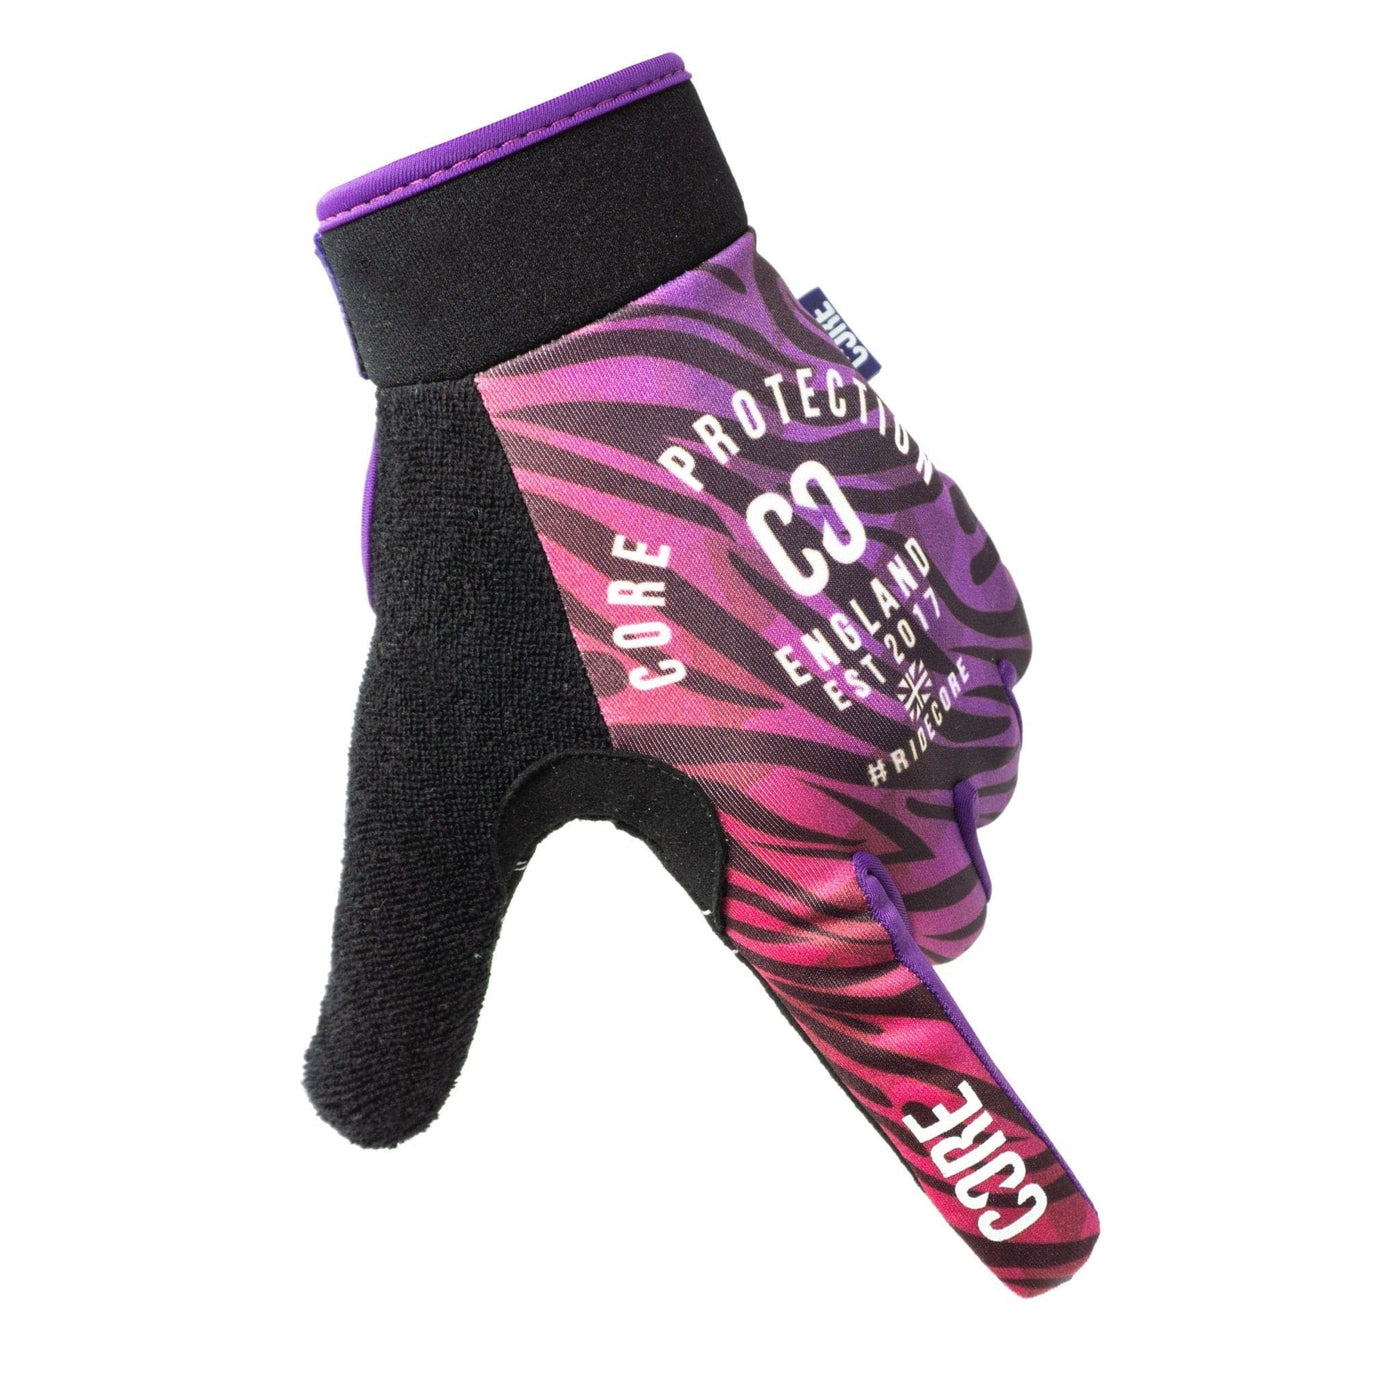 CORE Protection BMX Gloves SR Zonky I Bike Gloves Finger Point